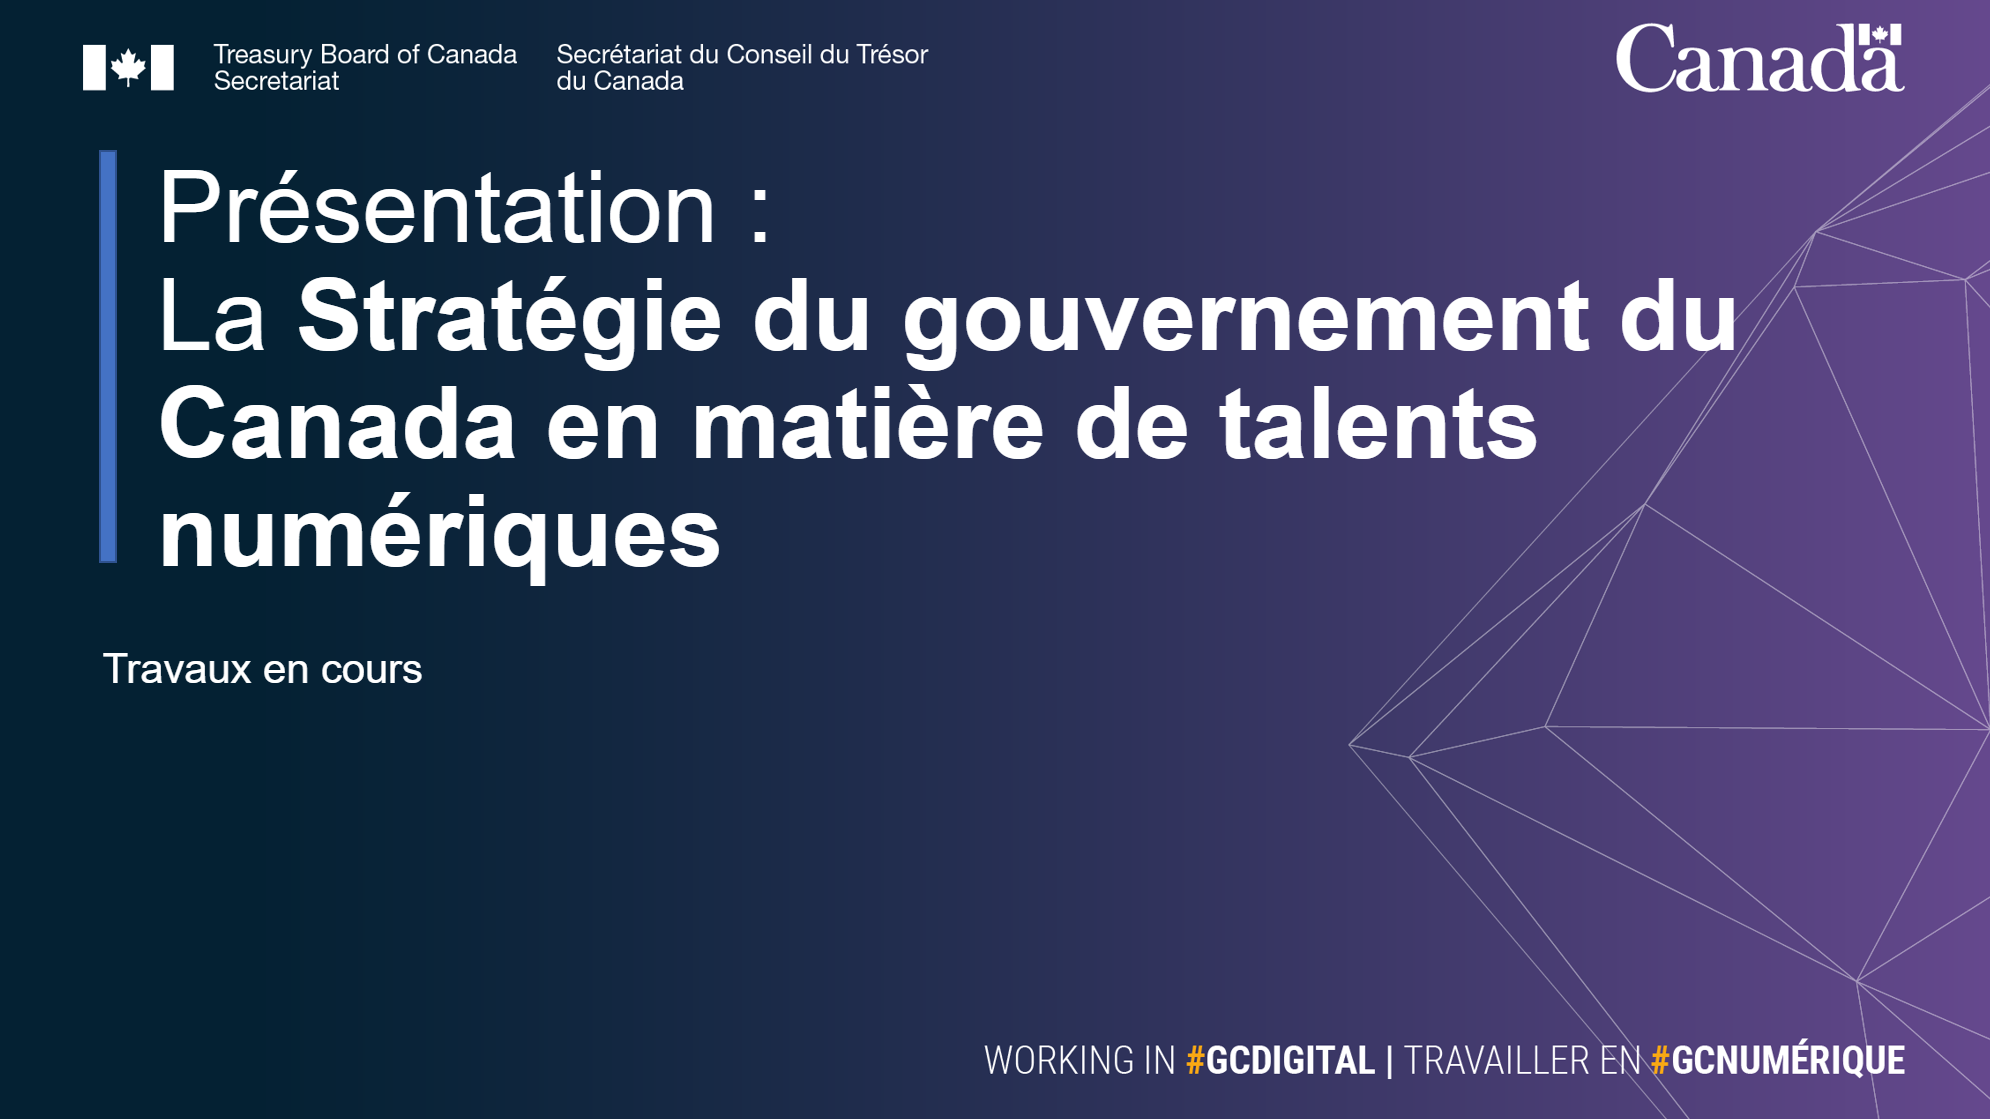 La Stratégie du gouvernement du Canada en matière de talents numériques titre de la diapositive